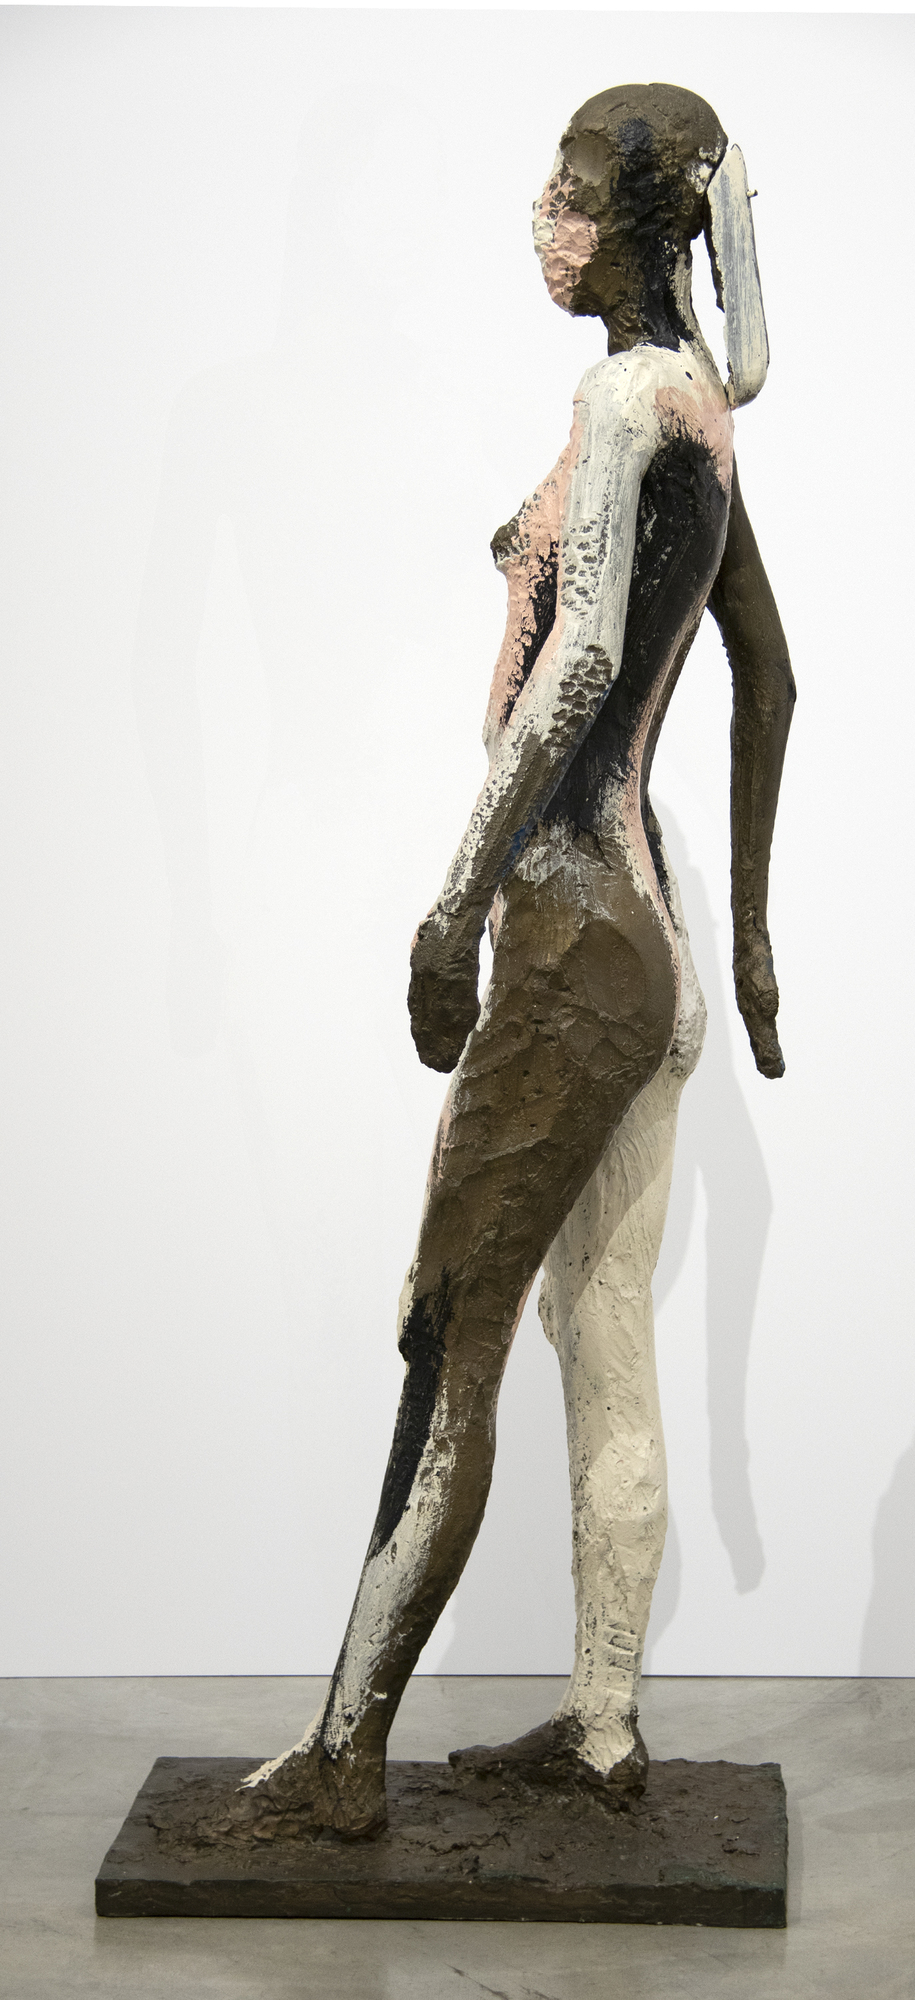 Manuel Neri était une figure centrale du Bay Area Figurative Movement dans les années 1960. Au lieu de formes abstraites, le groupe mettait l&#039;accent sur l&#039;émotion à travers la puissance de la forme humaine. La présente œuvre, &quot;Sans titre&quot; (1982), explore la forme féminine à l&#039;échelle réelle.  Tout au long de ses 60 ans de carrière, Neri a préféré travailler avec un seul modèle, Maria Julia Klimenko. L&#039;absence de visage dans de nombreuses sculptures ajoute un élément de mystère et d&#039;ambiguïté. Dans &quot;Sans titre&quot;, la composition est axée sur la structure et la forme de la figure.  Manuel Neri est représenté dans de nombreuses collections de musées à travers le monde, notamment à la Addison Gallery/Phillips Academy, à la Anderson Collection de l&#039;université de Stanford, à l&#039;Art Institute of Chicago, au Cantor Arts Center de l&#039;université de Stanford, au Cincinnati Art Museum, au Crocker Art Museum de Sacramento, en Californie, au Denver Art Museum, au El Paso Museum of Art, au Texas, aux Fine Arts Museums de San Francisco, aux Harvard University Art Museums, au Hirshhorn Museum and Sculpture Garden de Washington, D. C., au Honolulu Museum of Art, à l&#039;Université de Californie du Sud, à l&#039;Université de Californie du Sud et à l&#039;Université de Californie du Sud.C. ; Honolulu Museum of Art, The Metropolitan Museum of Art, New York et la National Gallery of Art, Washington, DC.